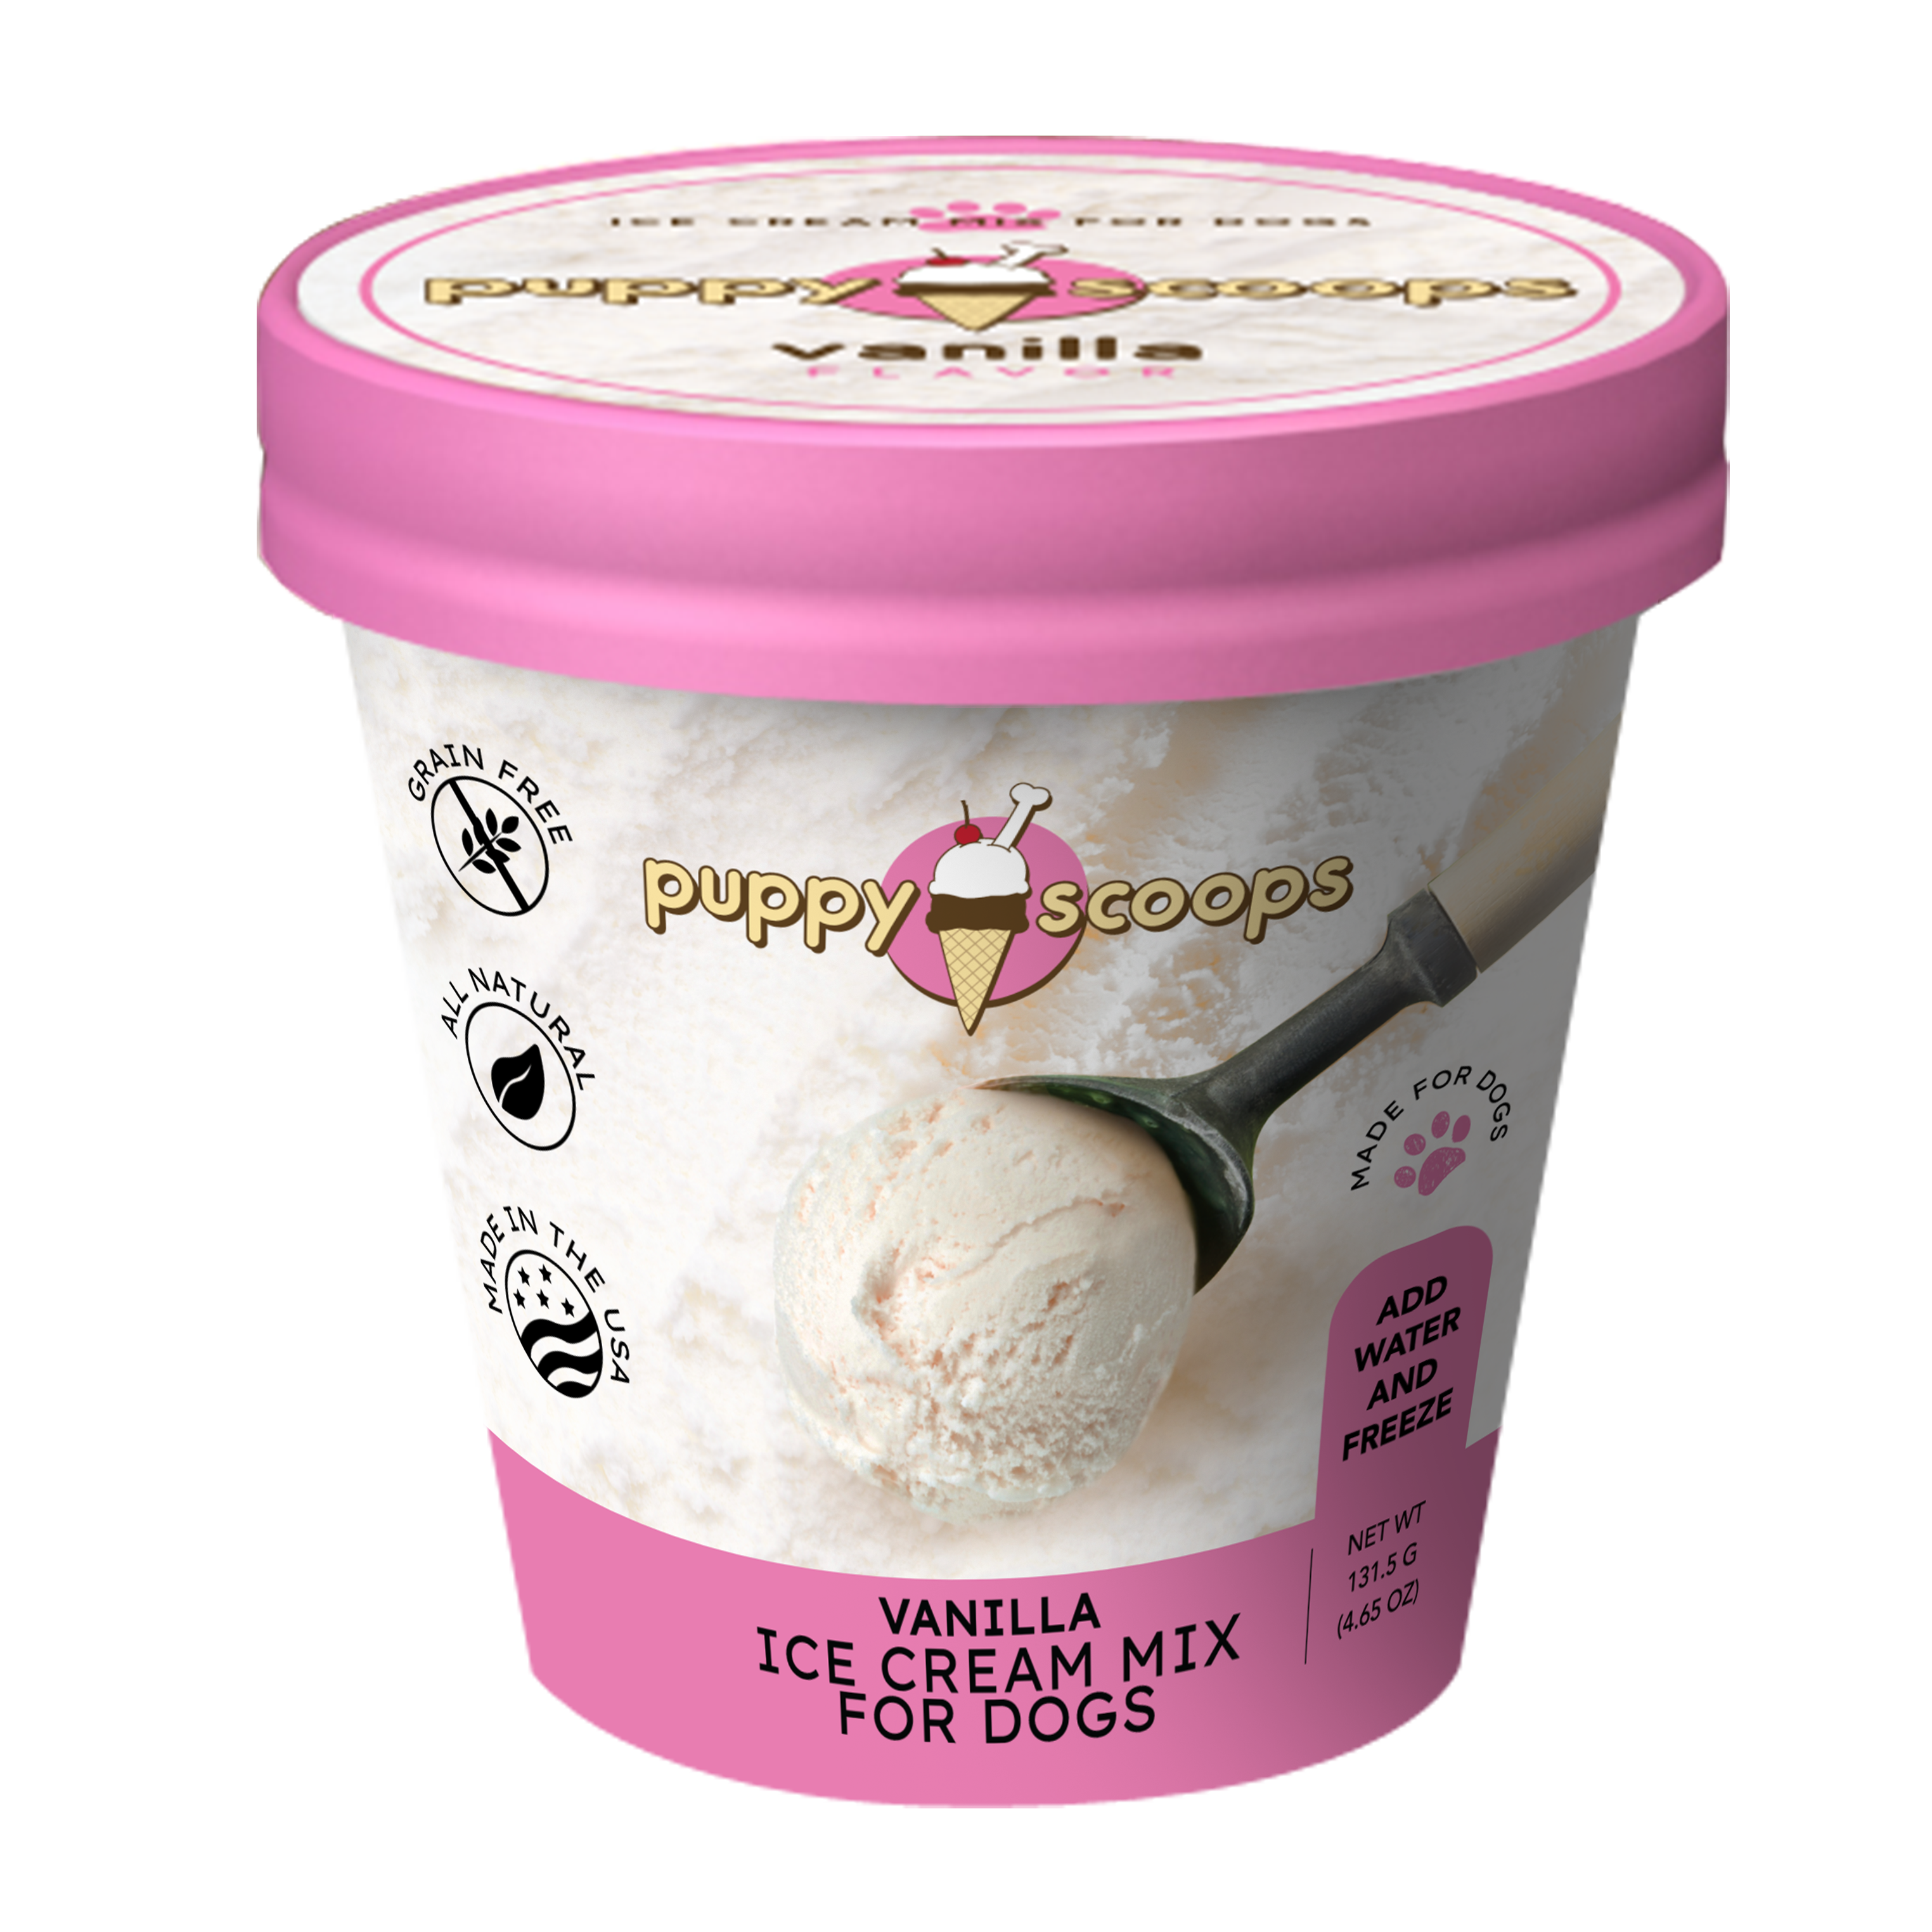 Pint-Sized Scoops : giant ice cream scoop